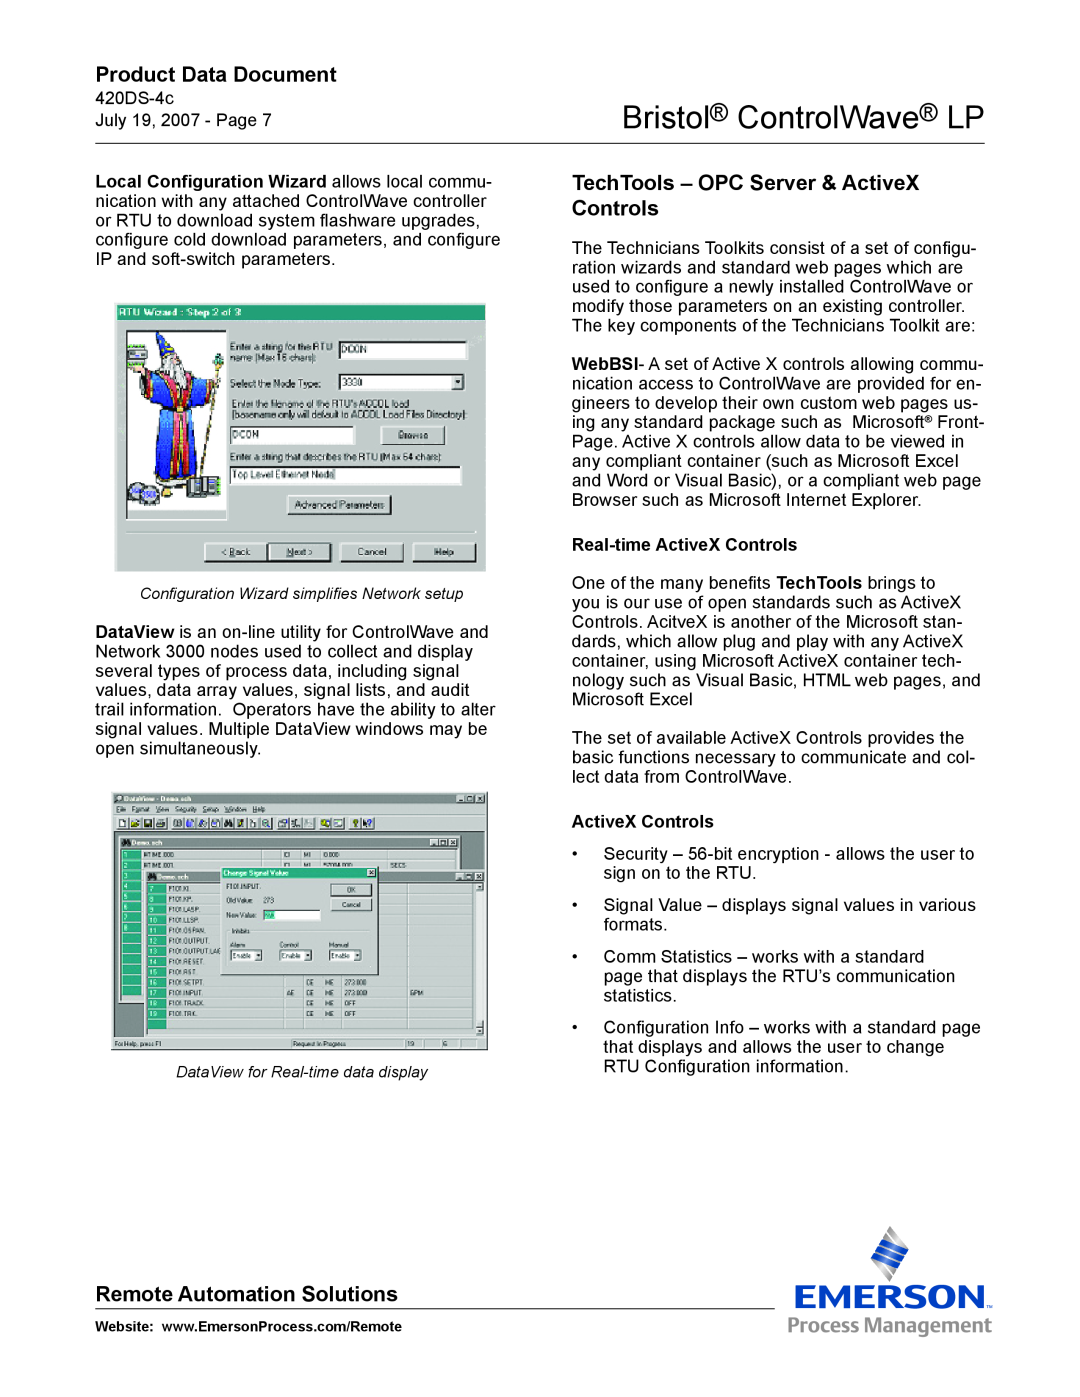 Emerson Process Management ControlWave LP manual TechTools - OPC Server & ActiveX Controls, Real-time ActiveX Controls 